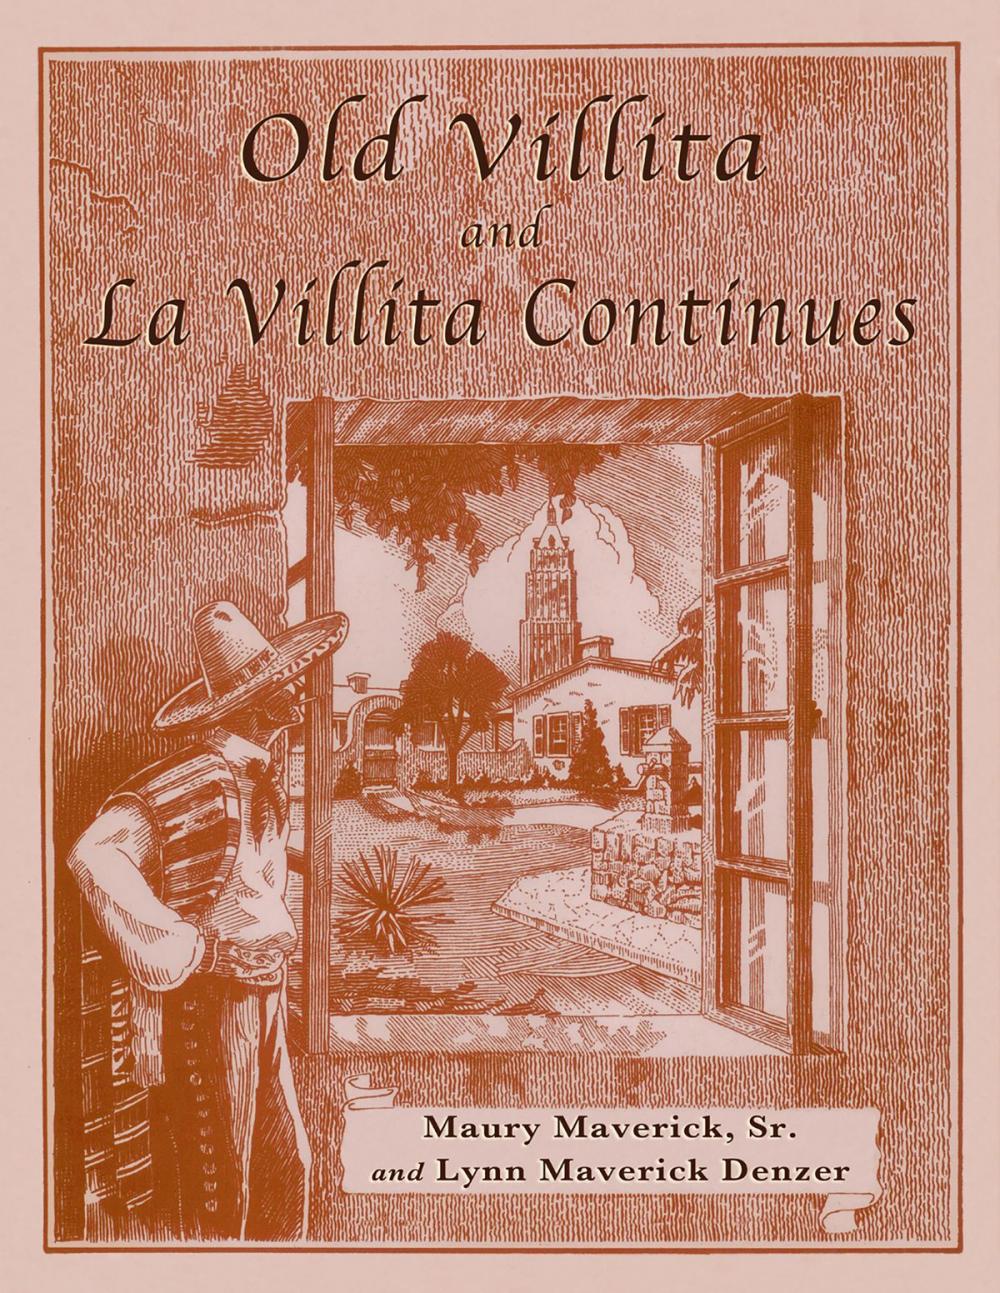 Big bigCover of Old Villita and La Villita Continues